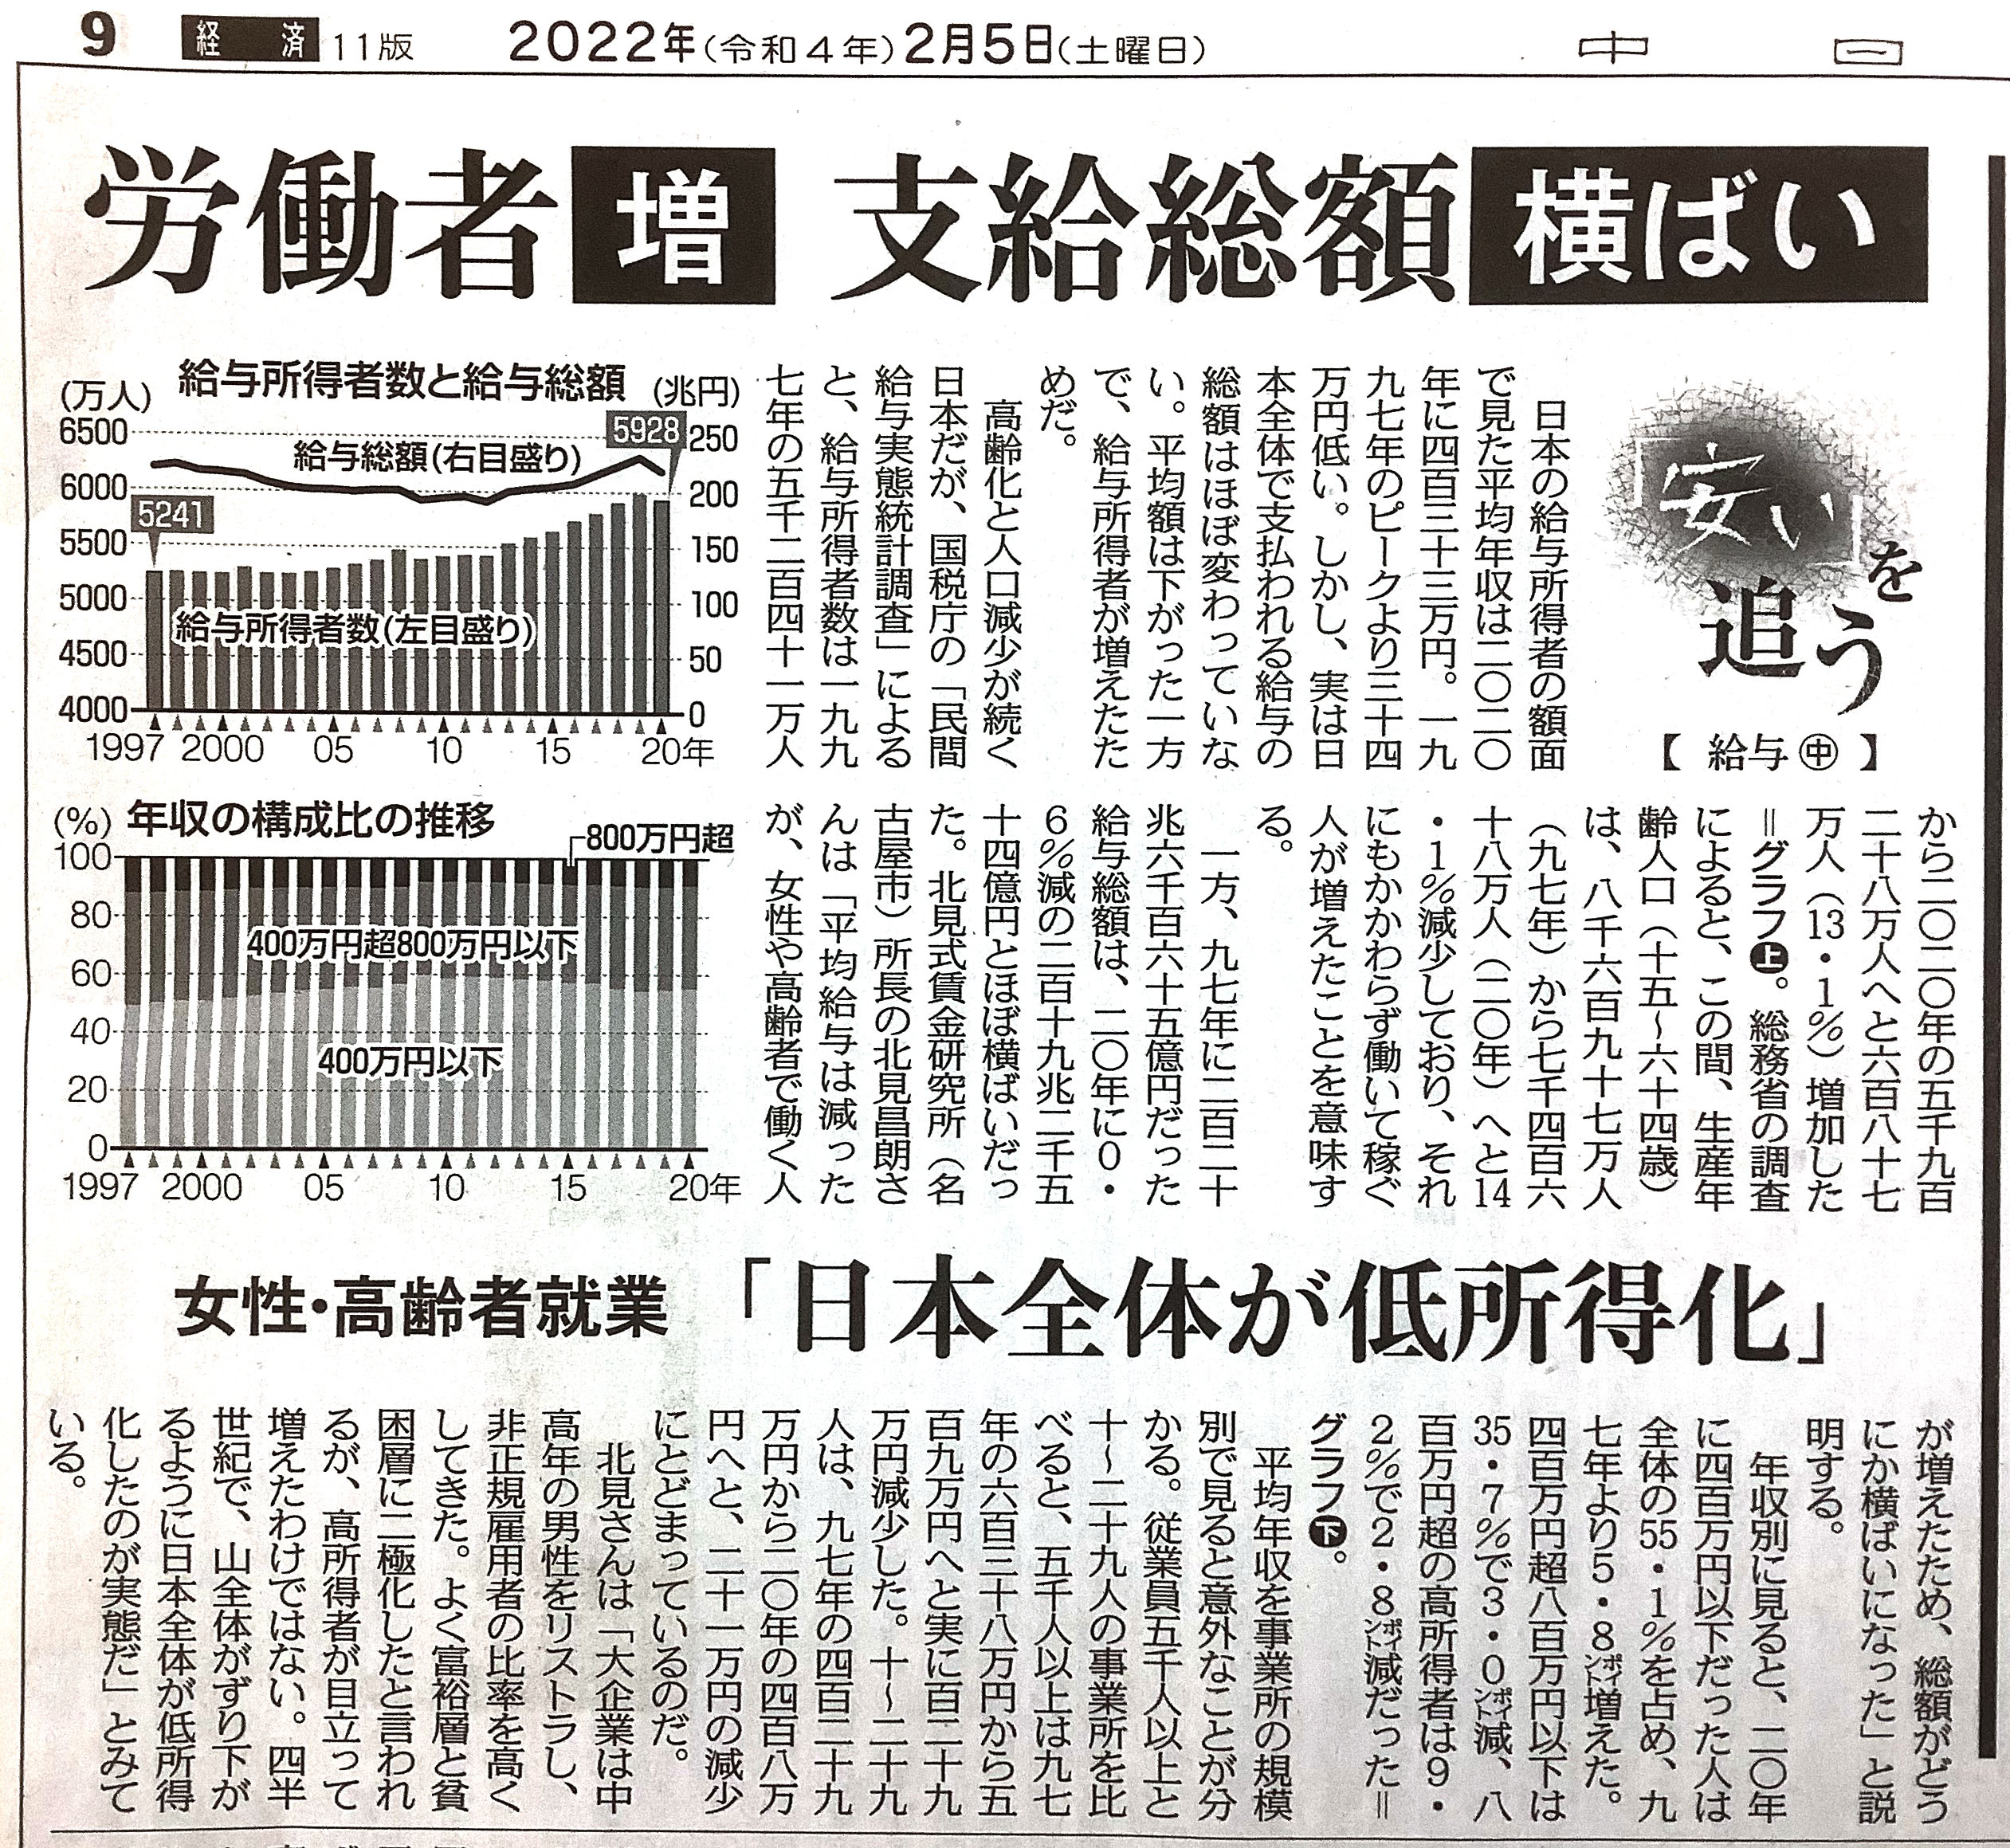 中日新聞「労働者増　支給総額横ばい」北見昌朗コメント